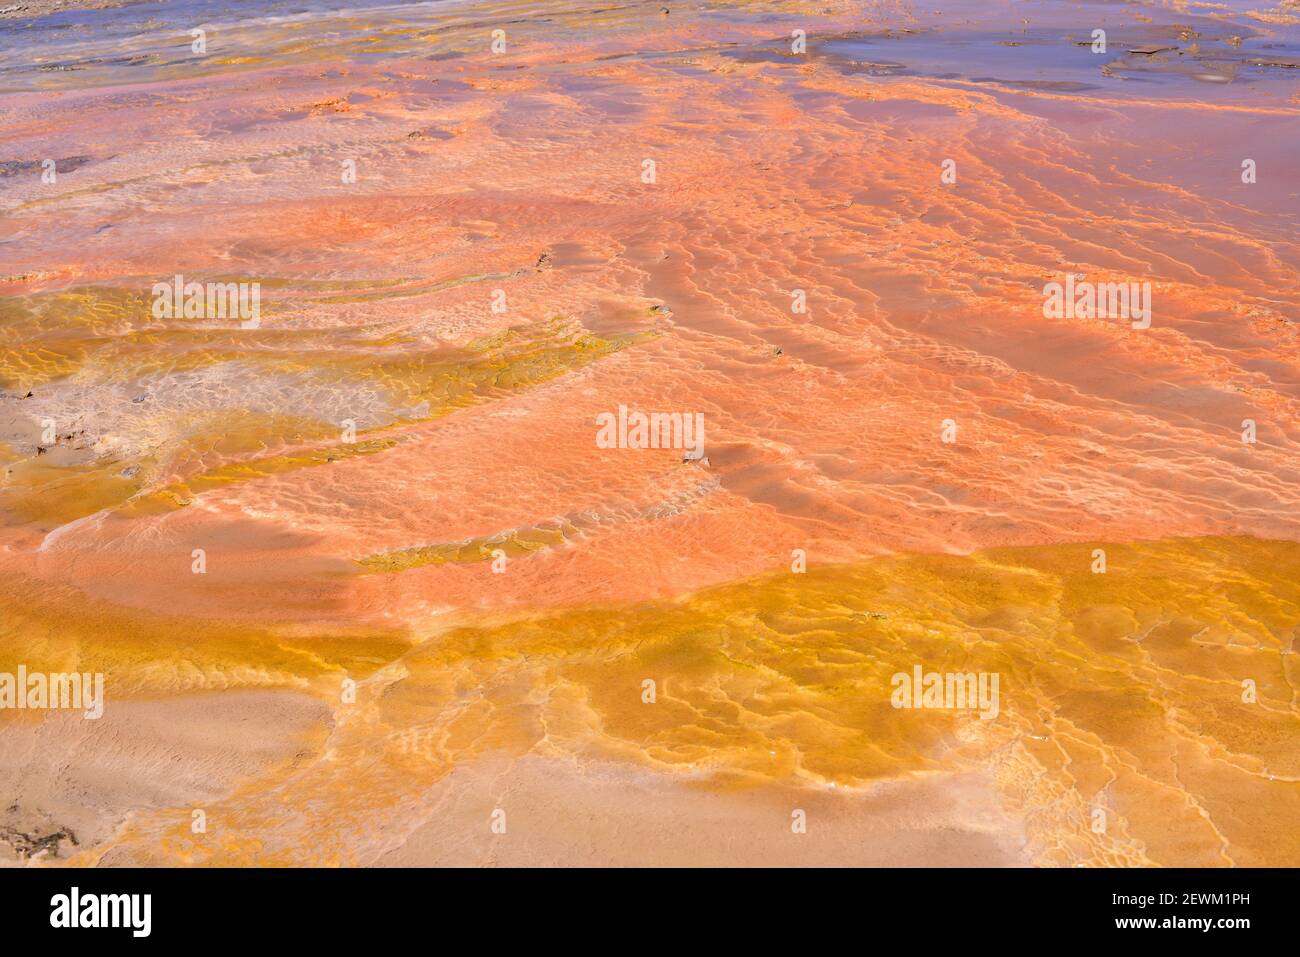 El Tatio Geyser Field. Extremophiles microorganisms (Archaea, Bacteria and Cyanobacteria). San Pedro de Atacama, Antofagasta, Chile. Stock Photo